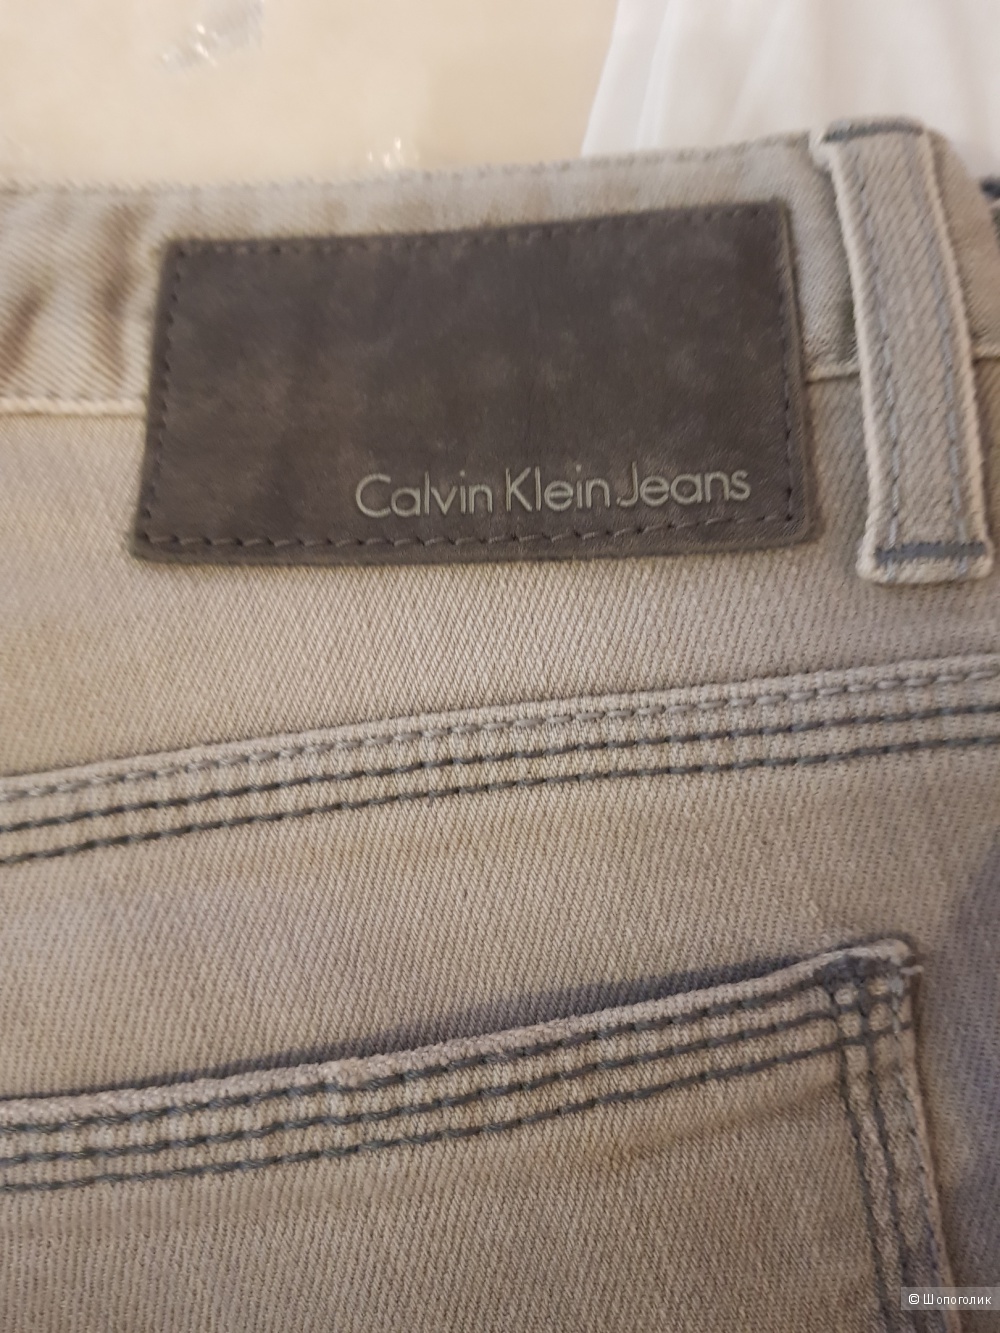 Джинсы Calvin Klein  Jeans. Размер 27/28